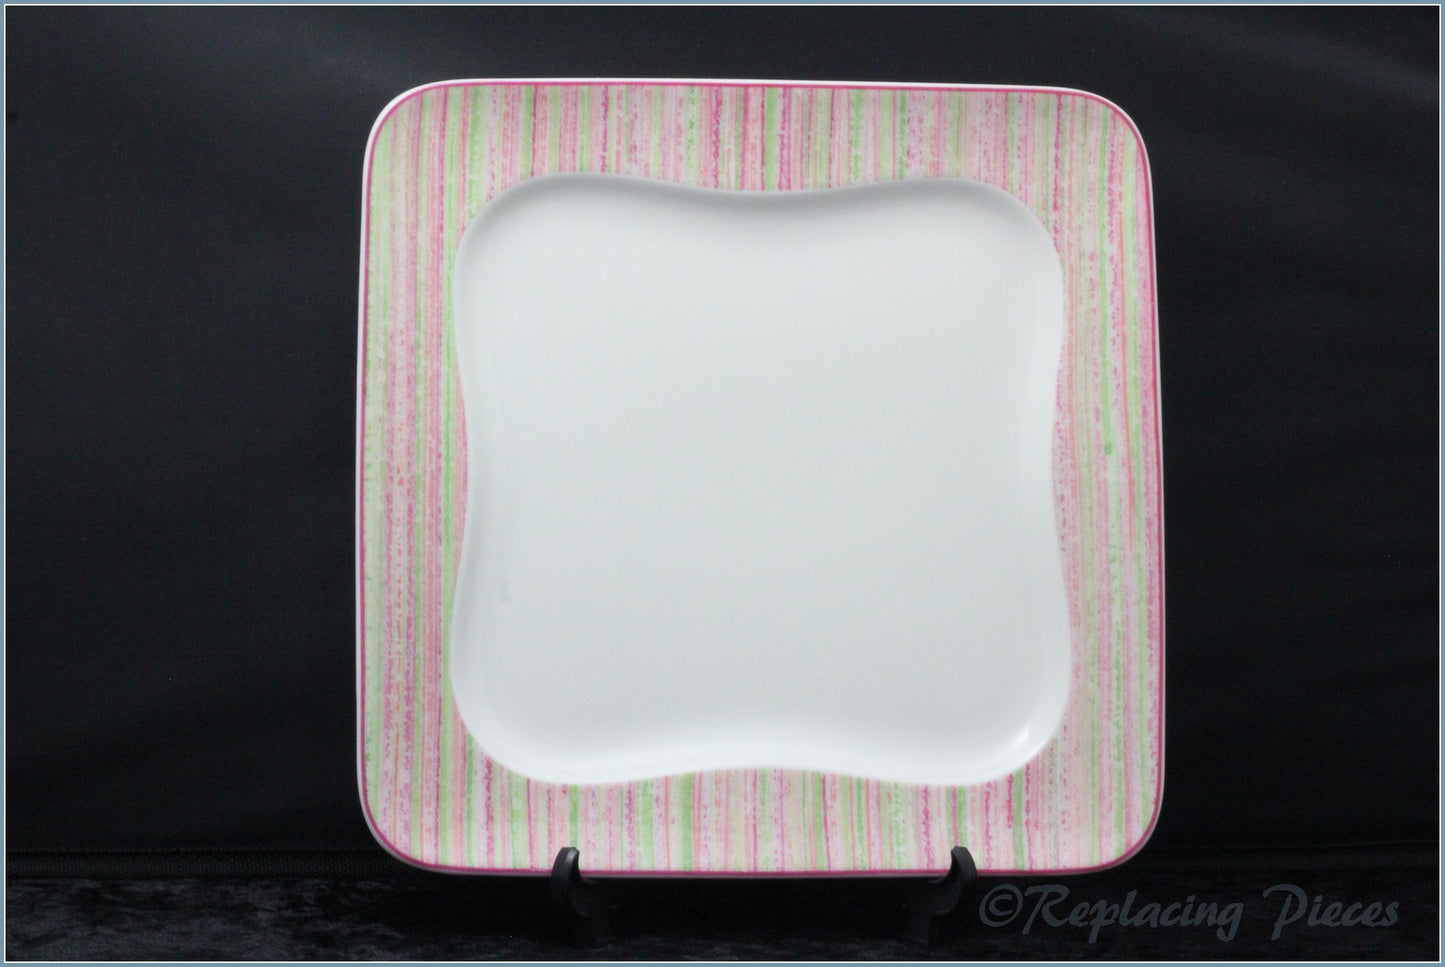 Villeroy & Boch - Vivo - 8 5/8" Square Salad Plate (Stripe)